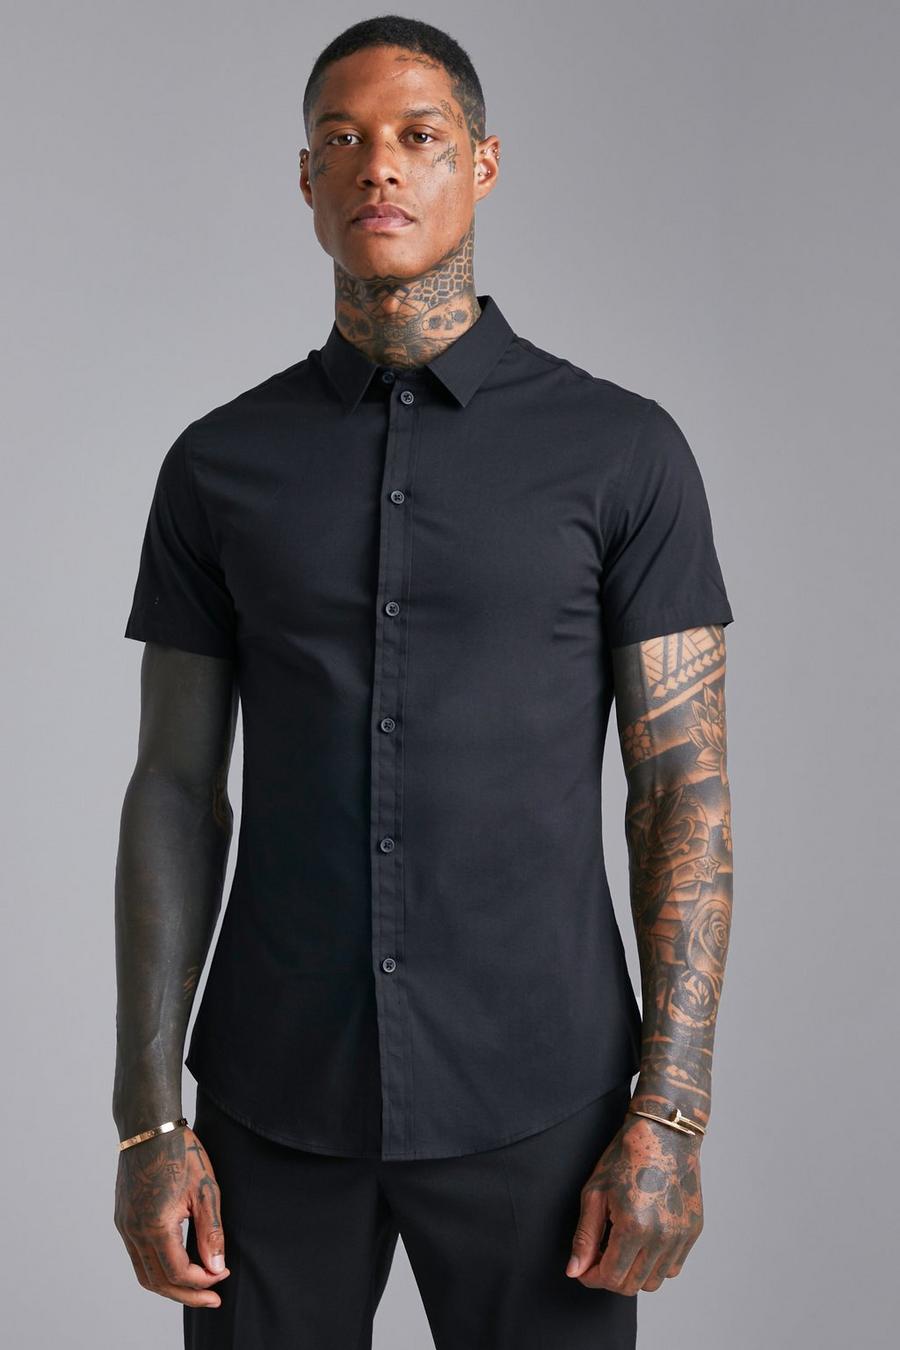 Black svart Short Sleeve Muscle Shirt